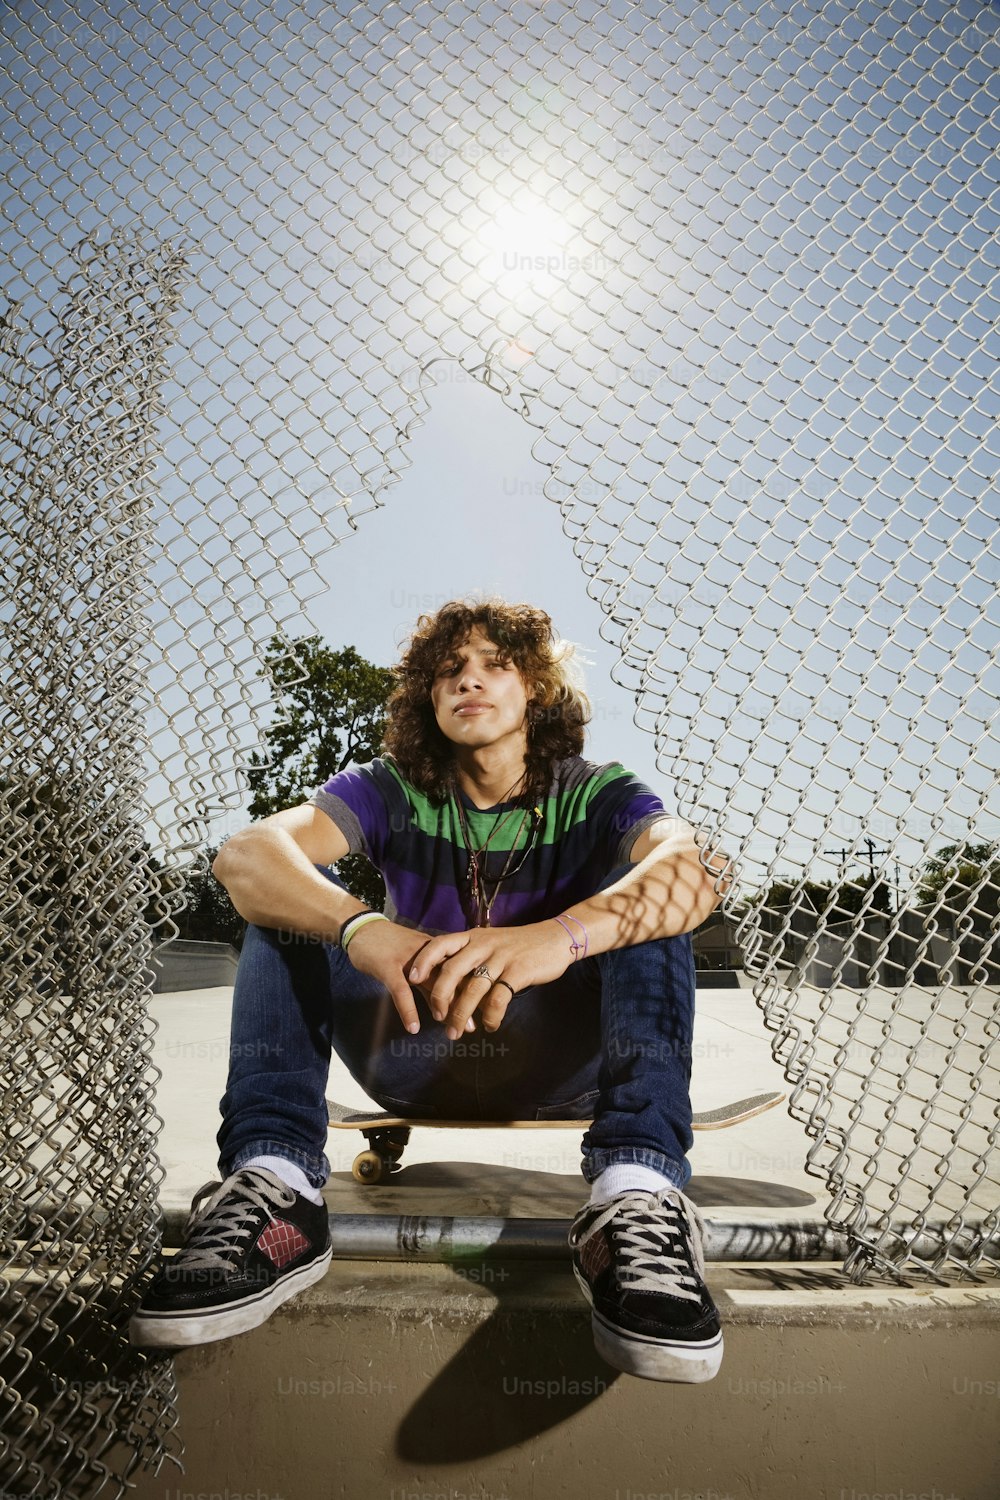 Ein Mann sitzt auf einem Skateboard vor einem Zaun